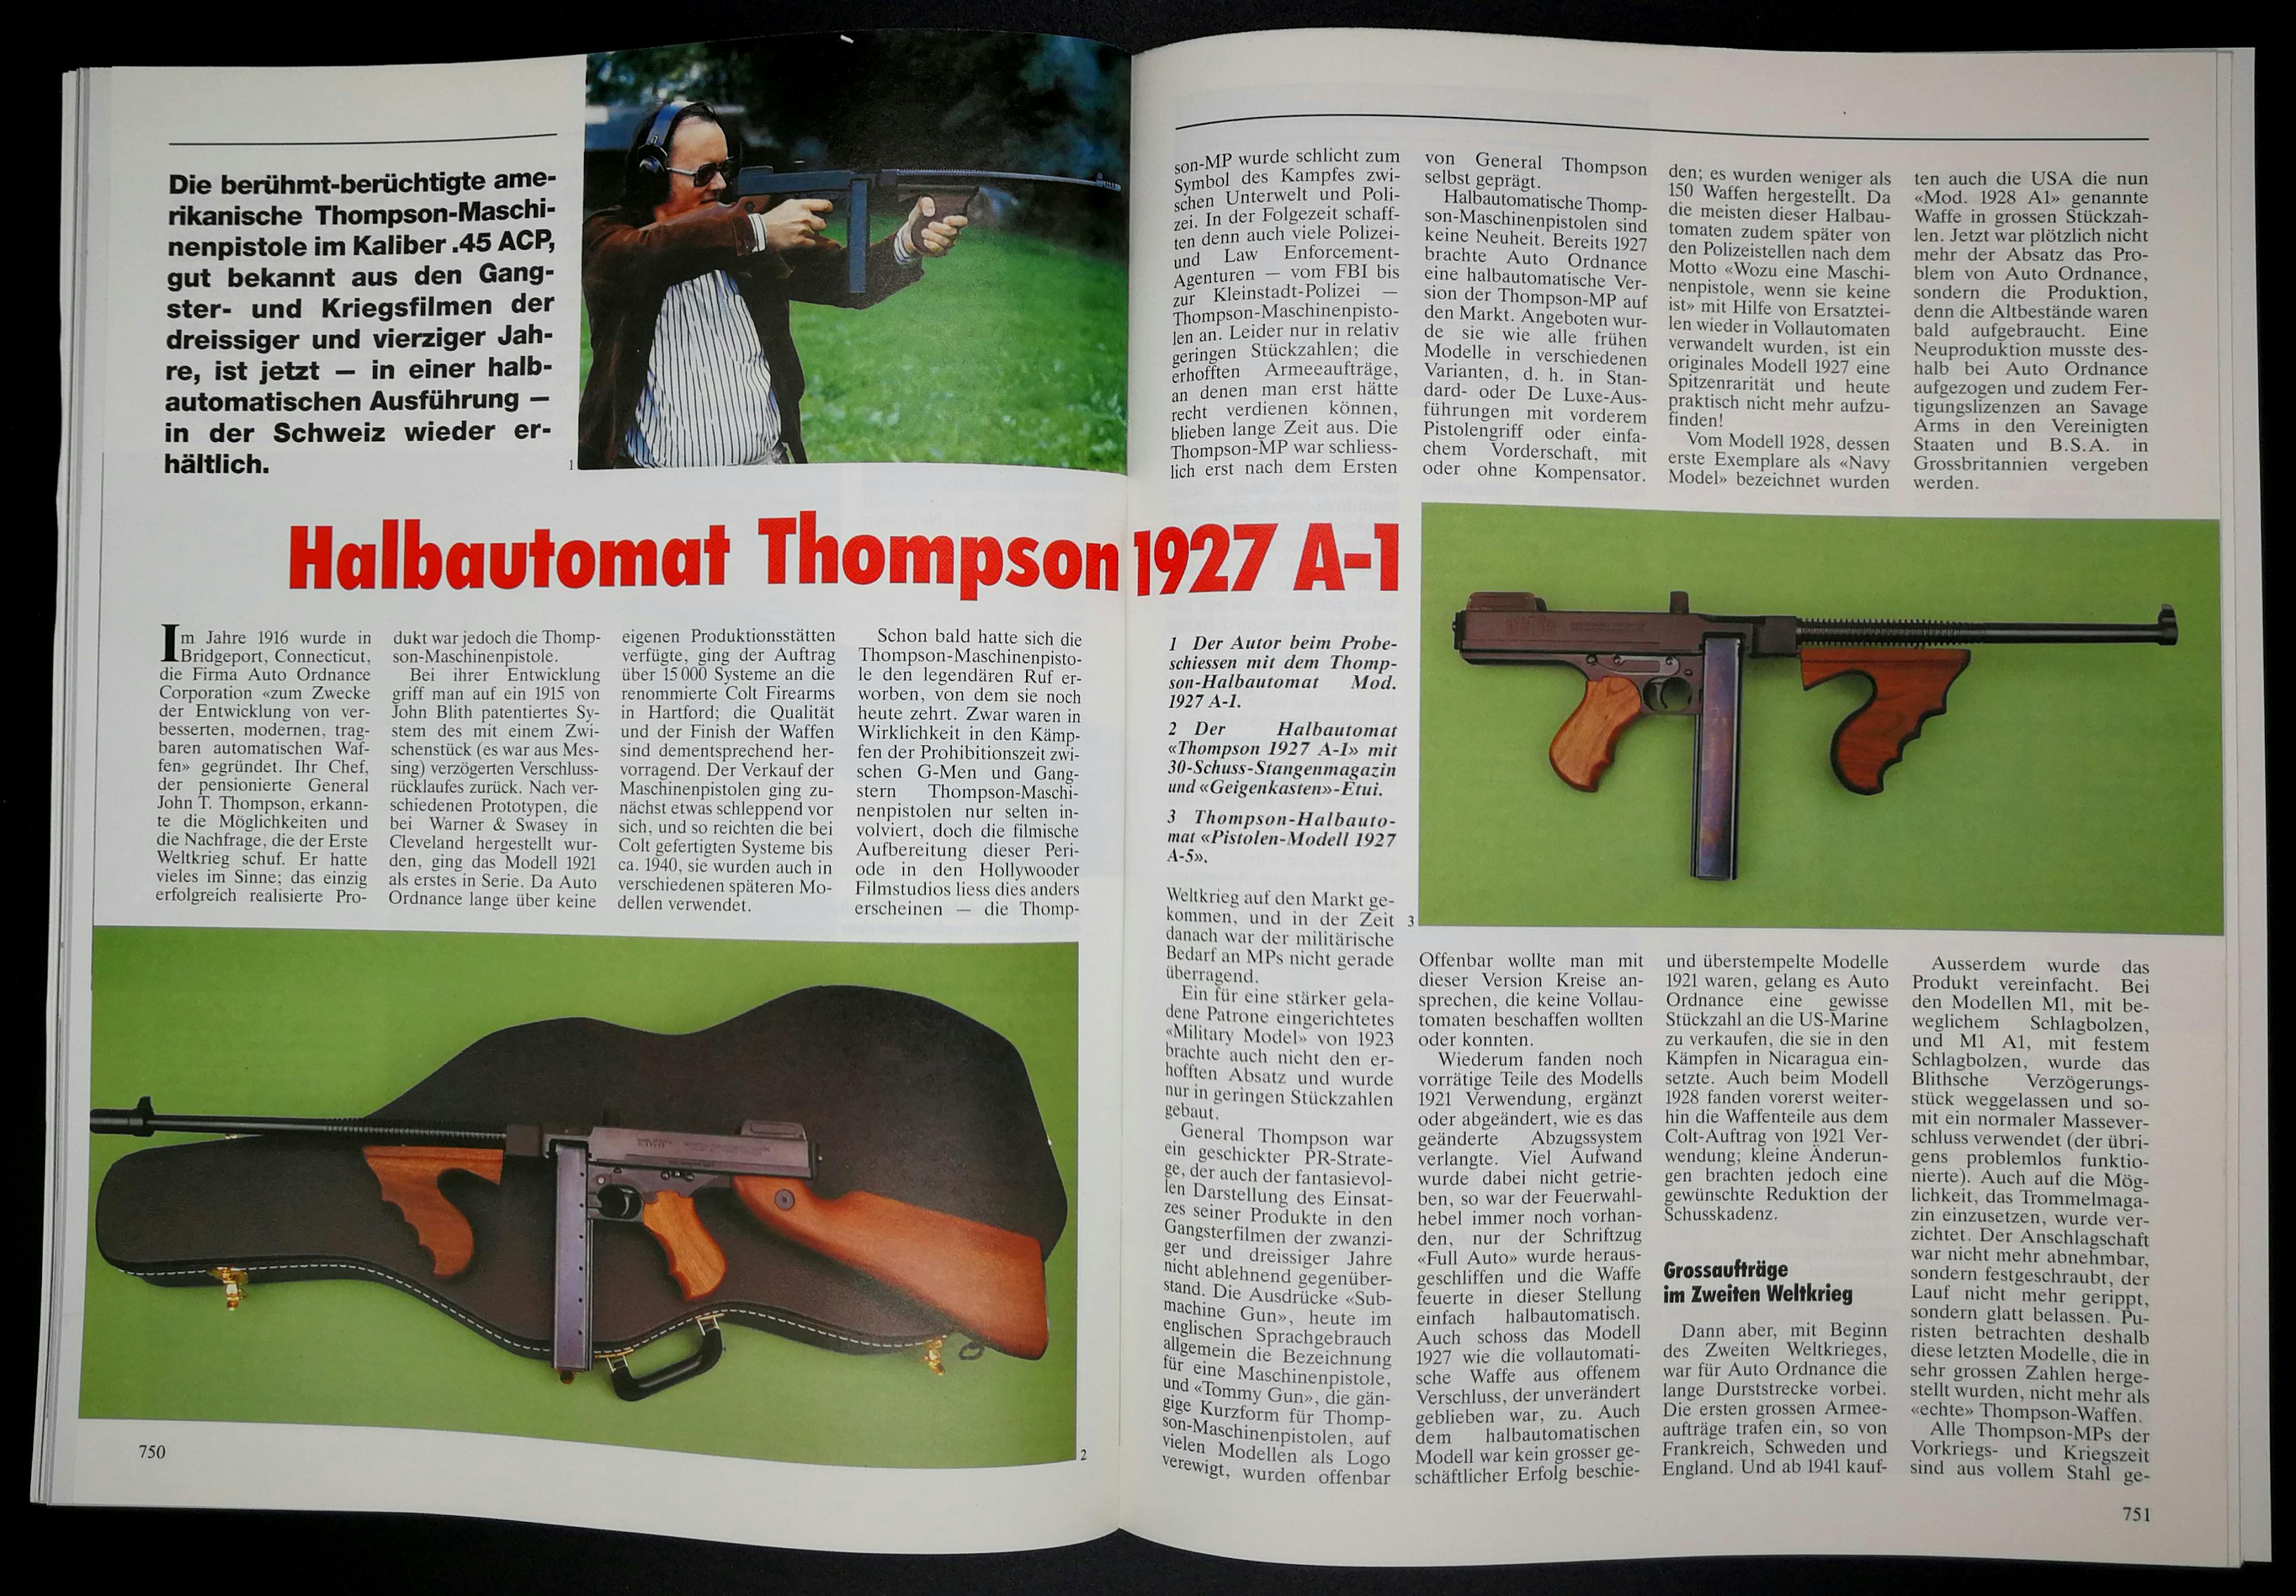 .45ACP, vollautomatisch, Trommelmagazin, Geigenkoffer. So kennt man die Tommygun, die Thompson A-1.
